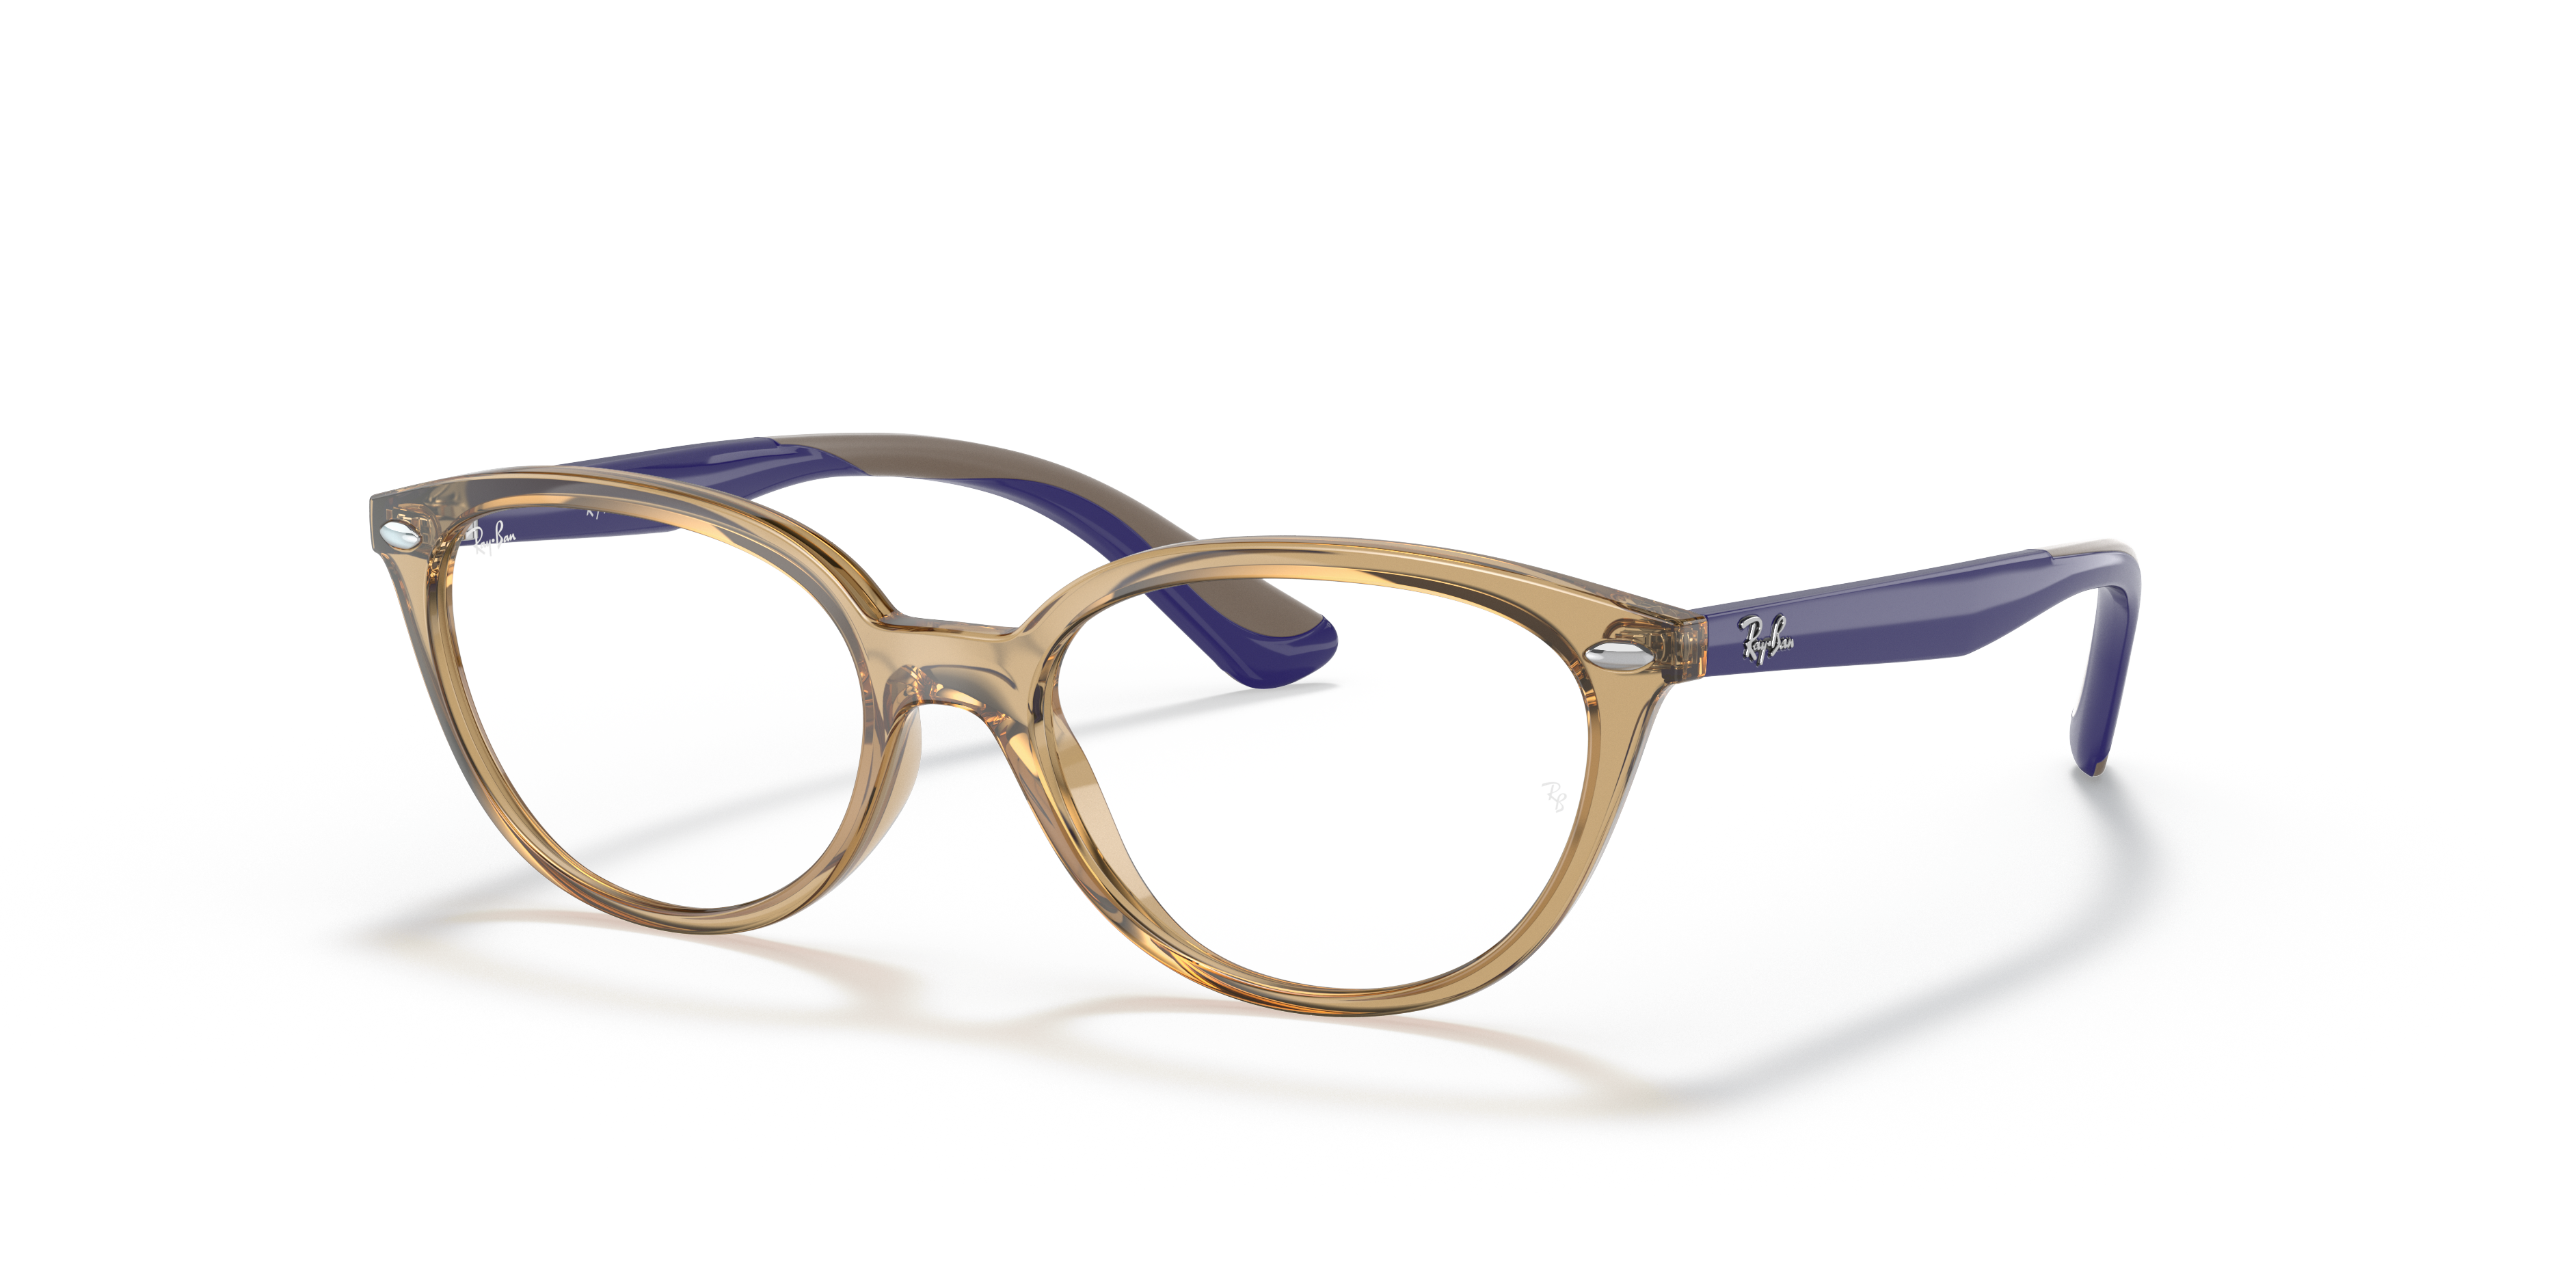 Rb1612 Optics Kids Eyeglasses with Transparent Light Brown Frame 